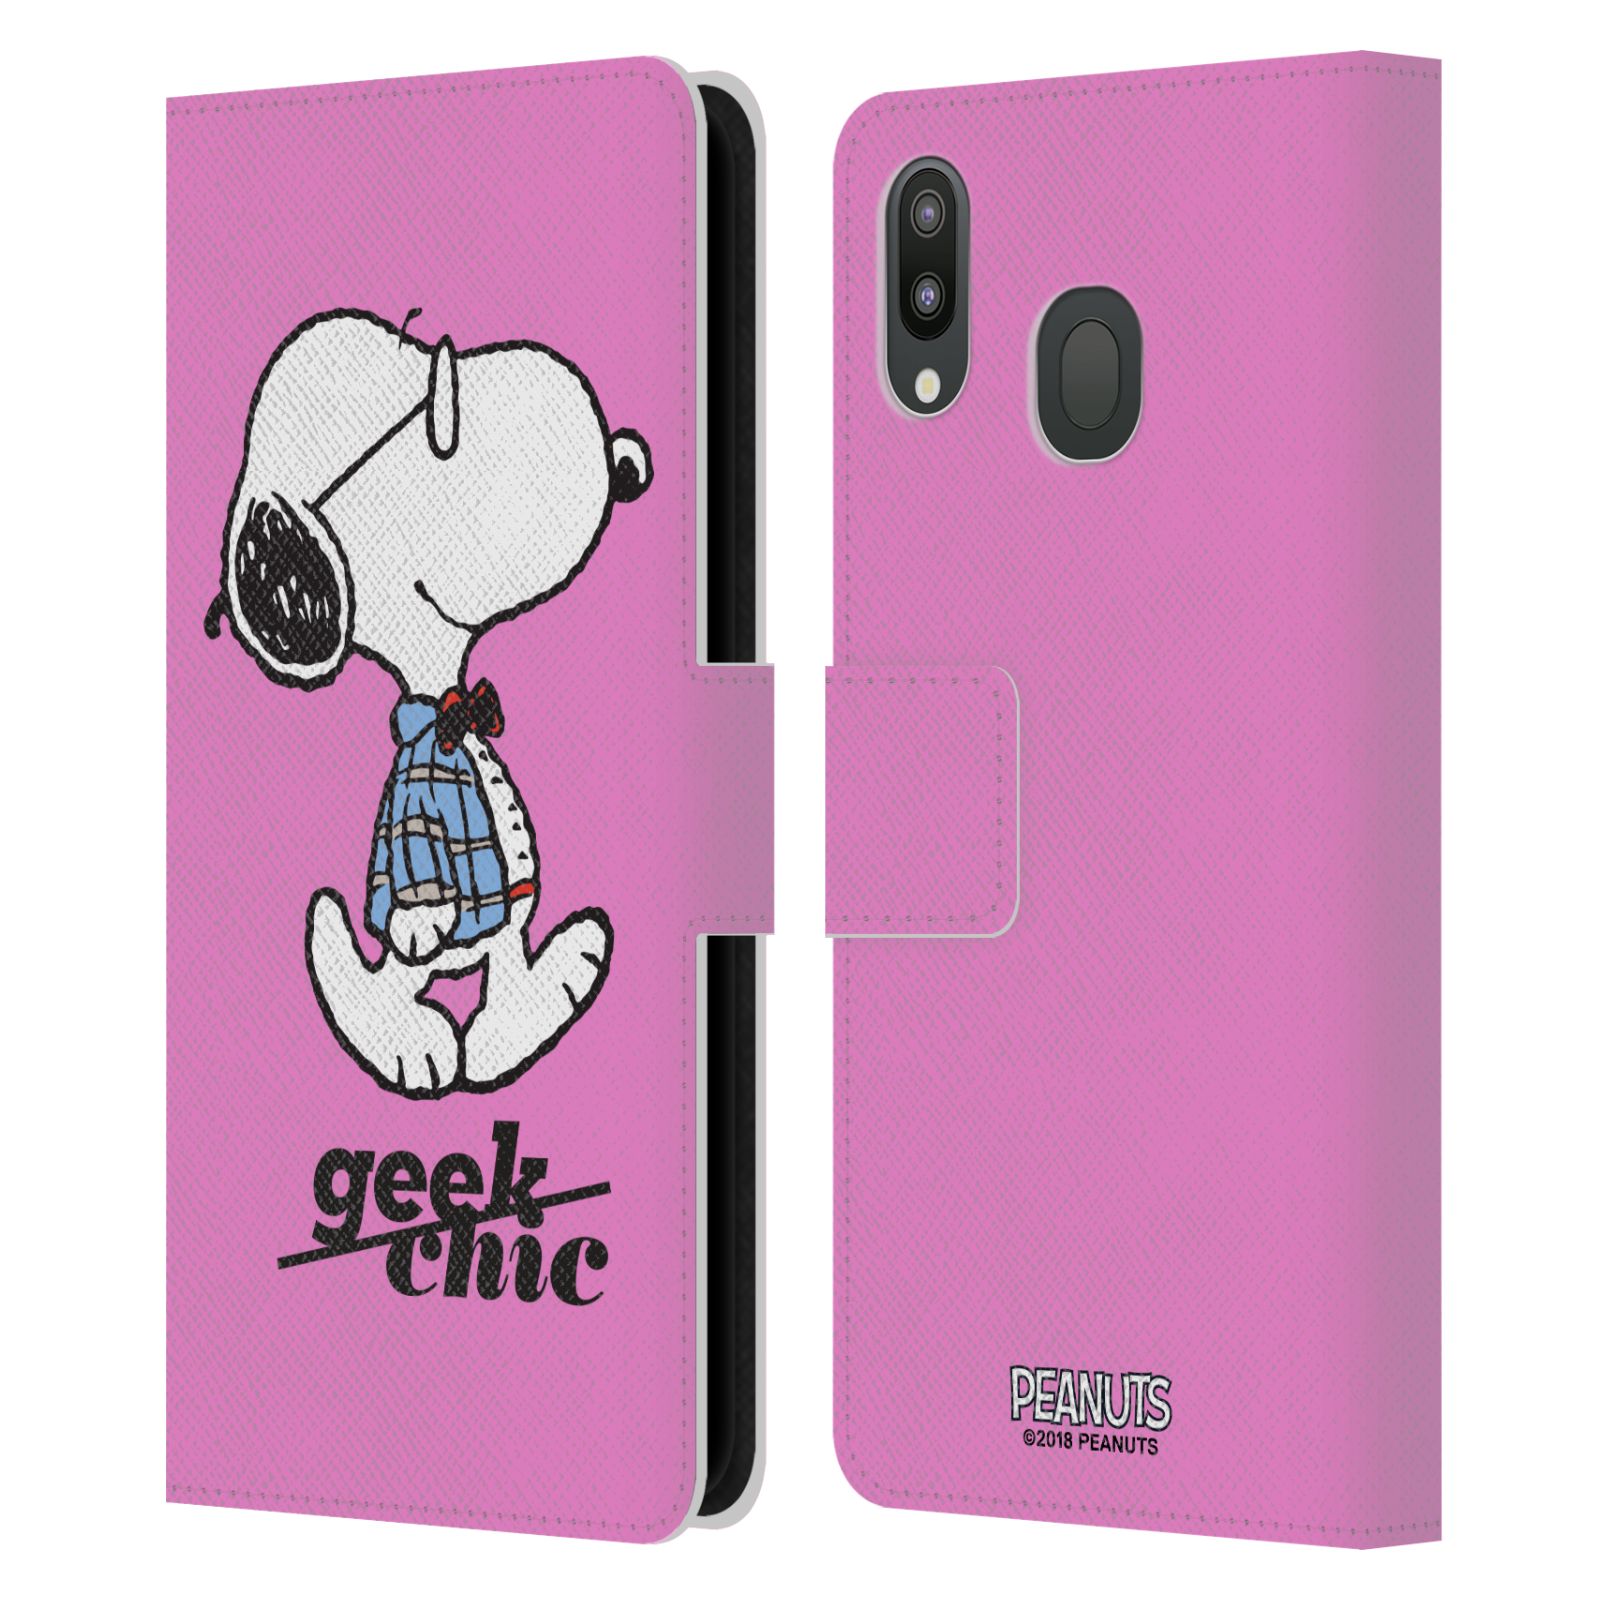 Pouzdro na mobil Samsung Galaxy M20 - Head Case - Peanuts - růžový pejsek snoopy nerd